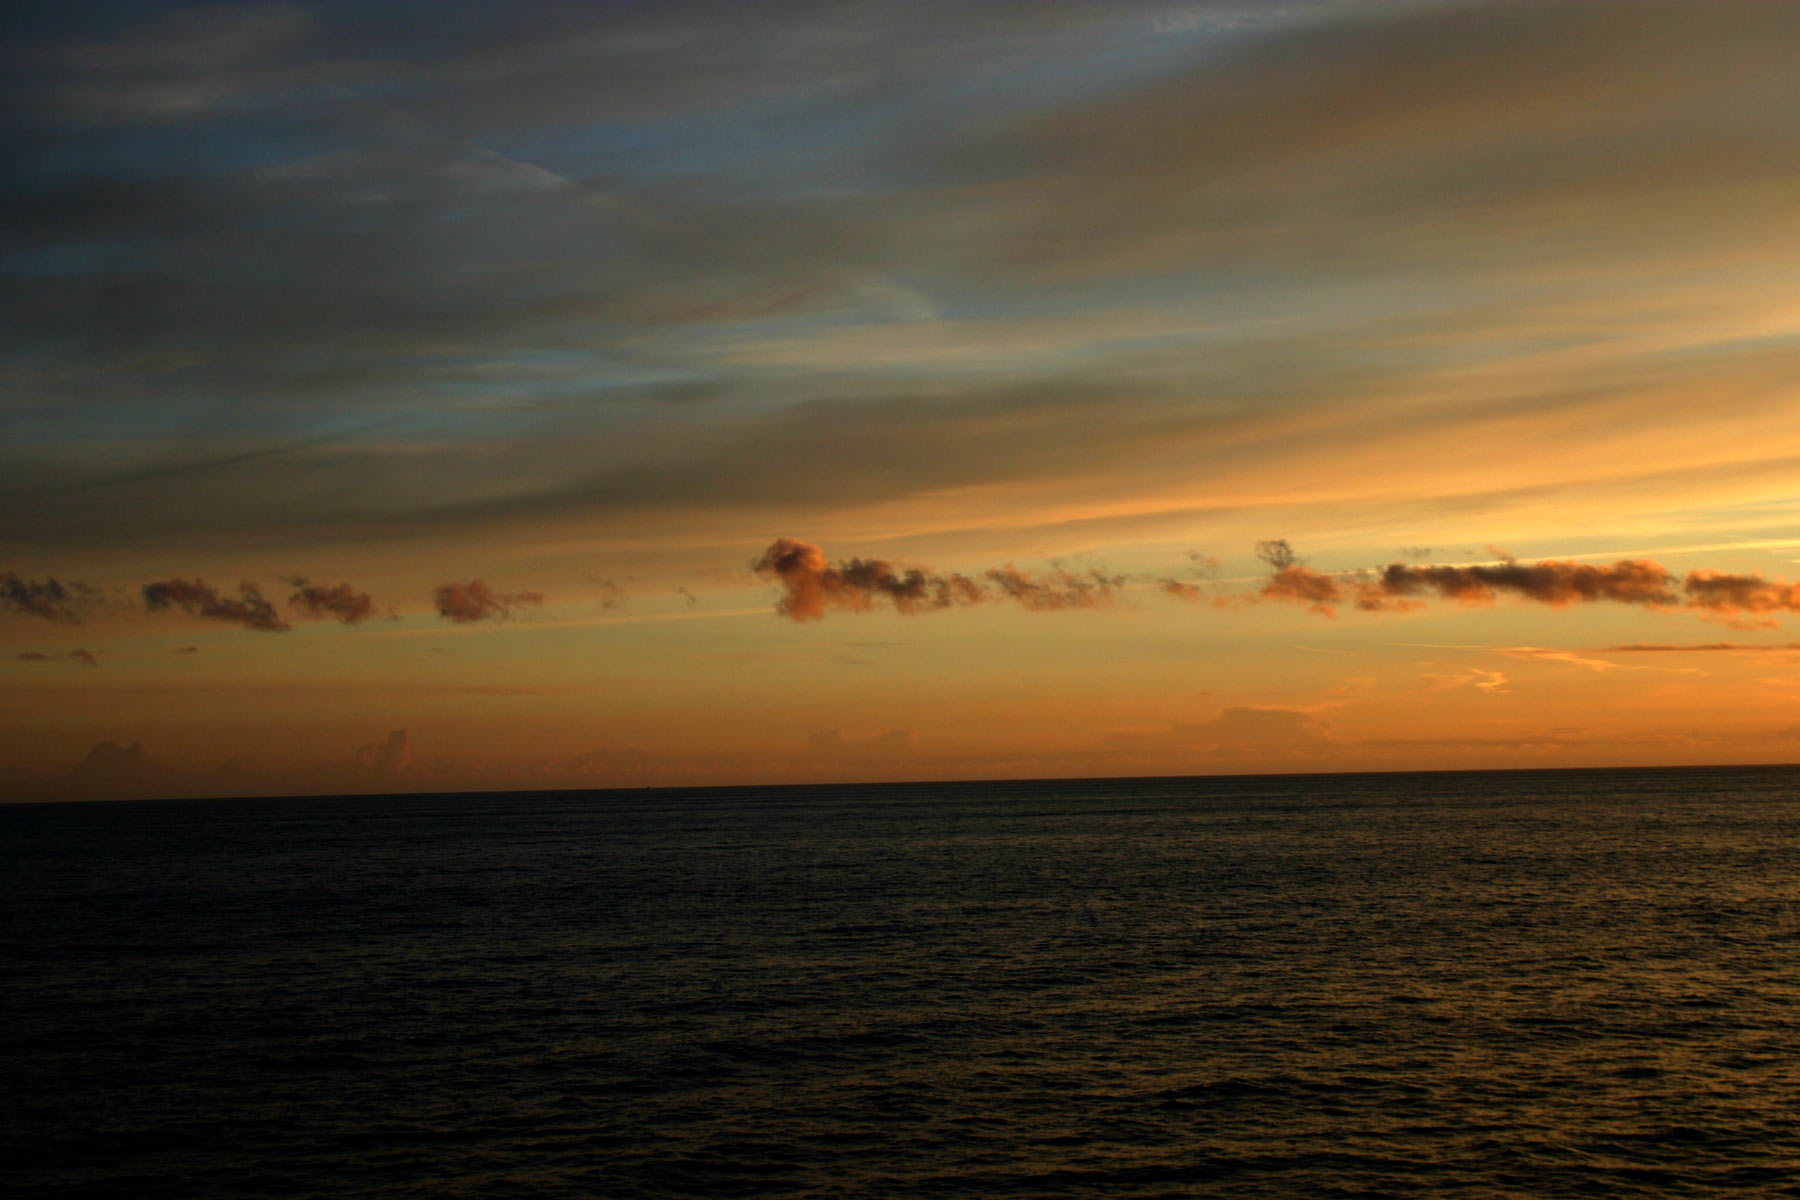 Sunset on the ocean photo